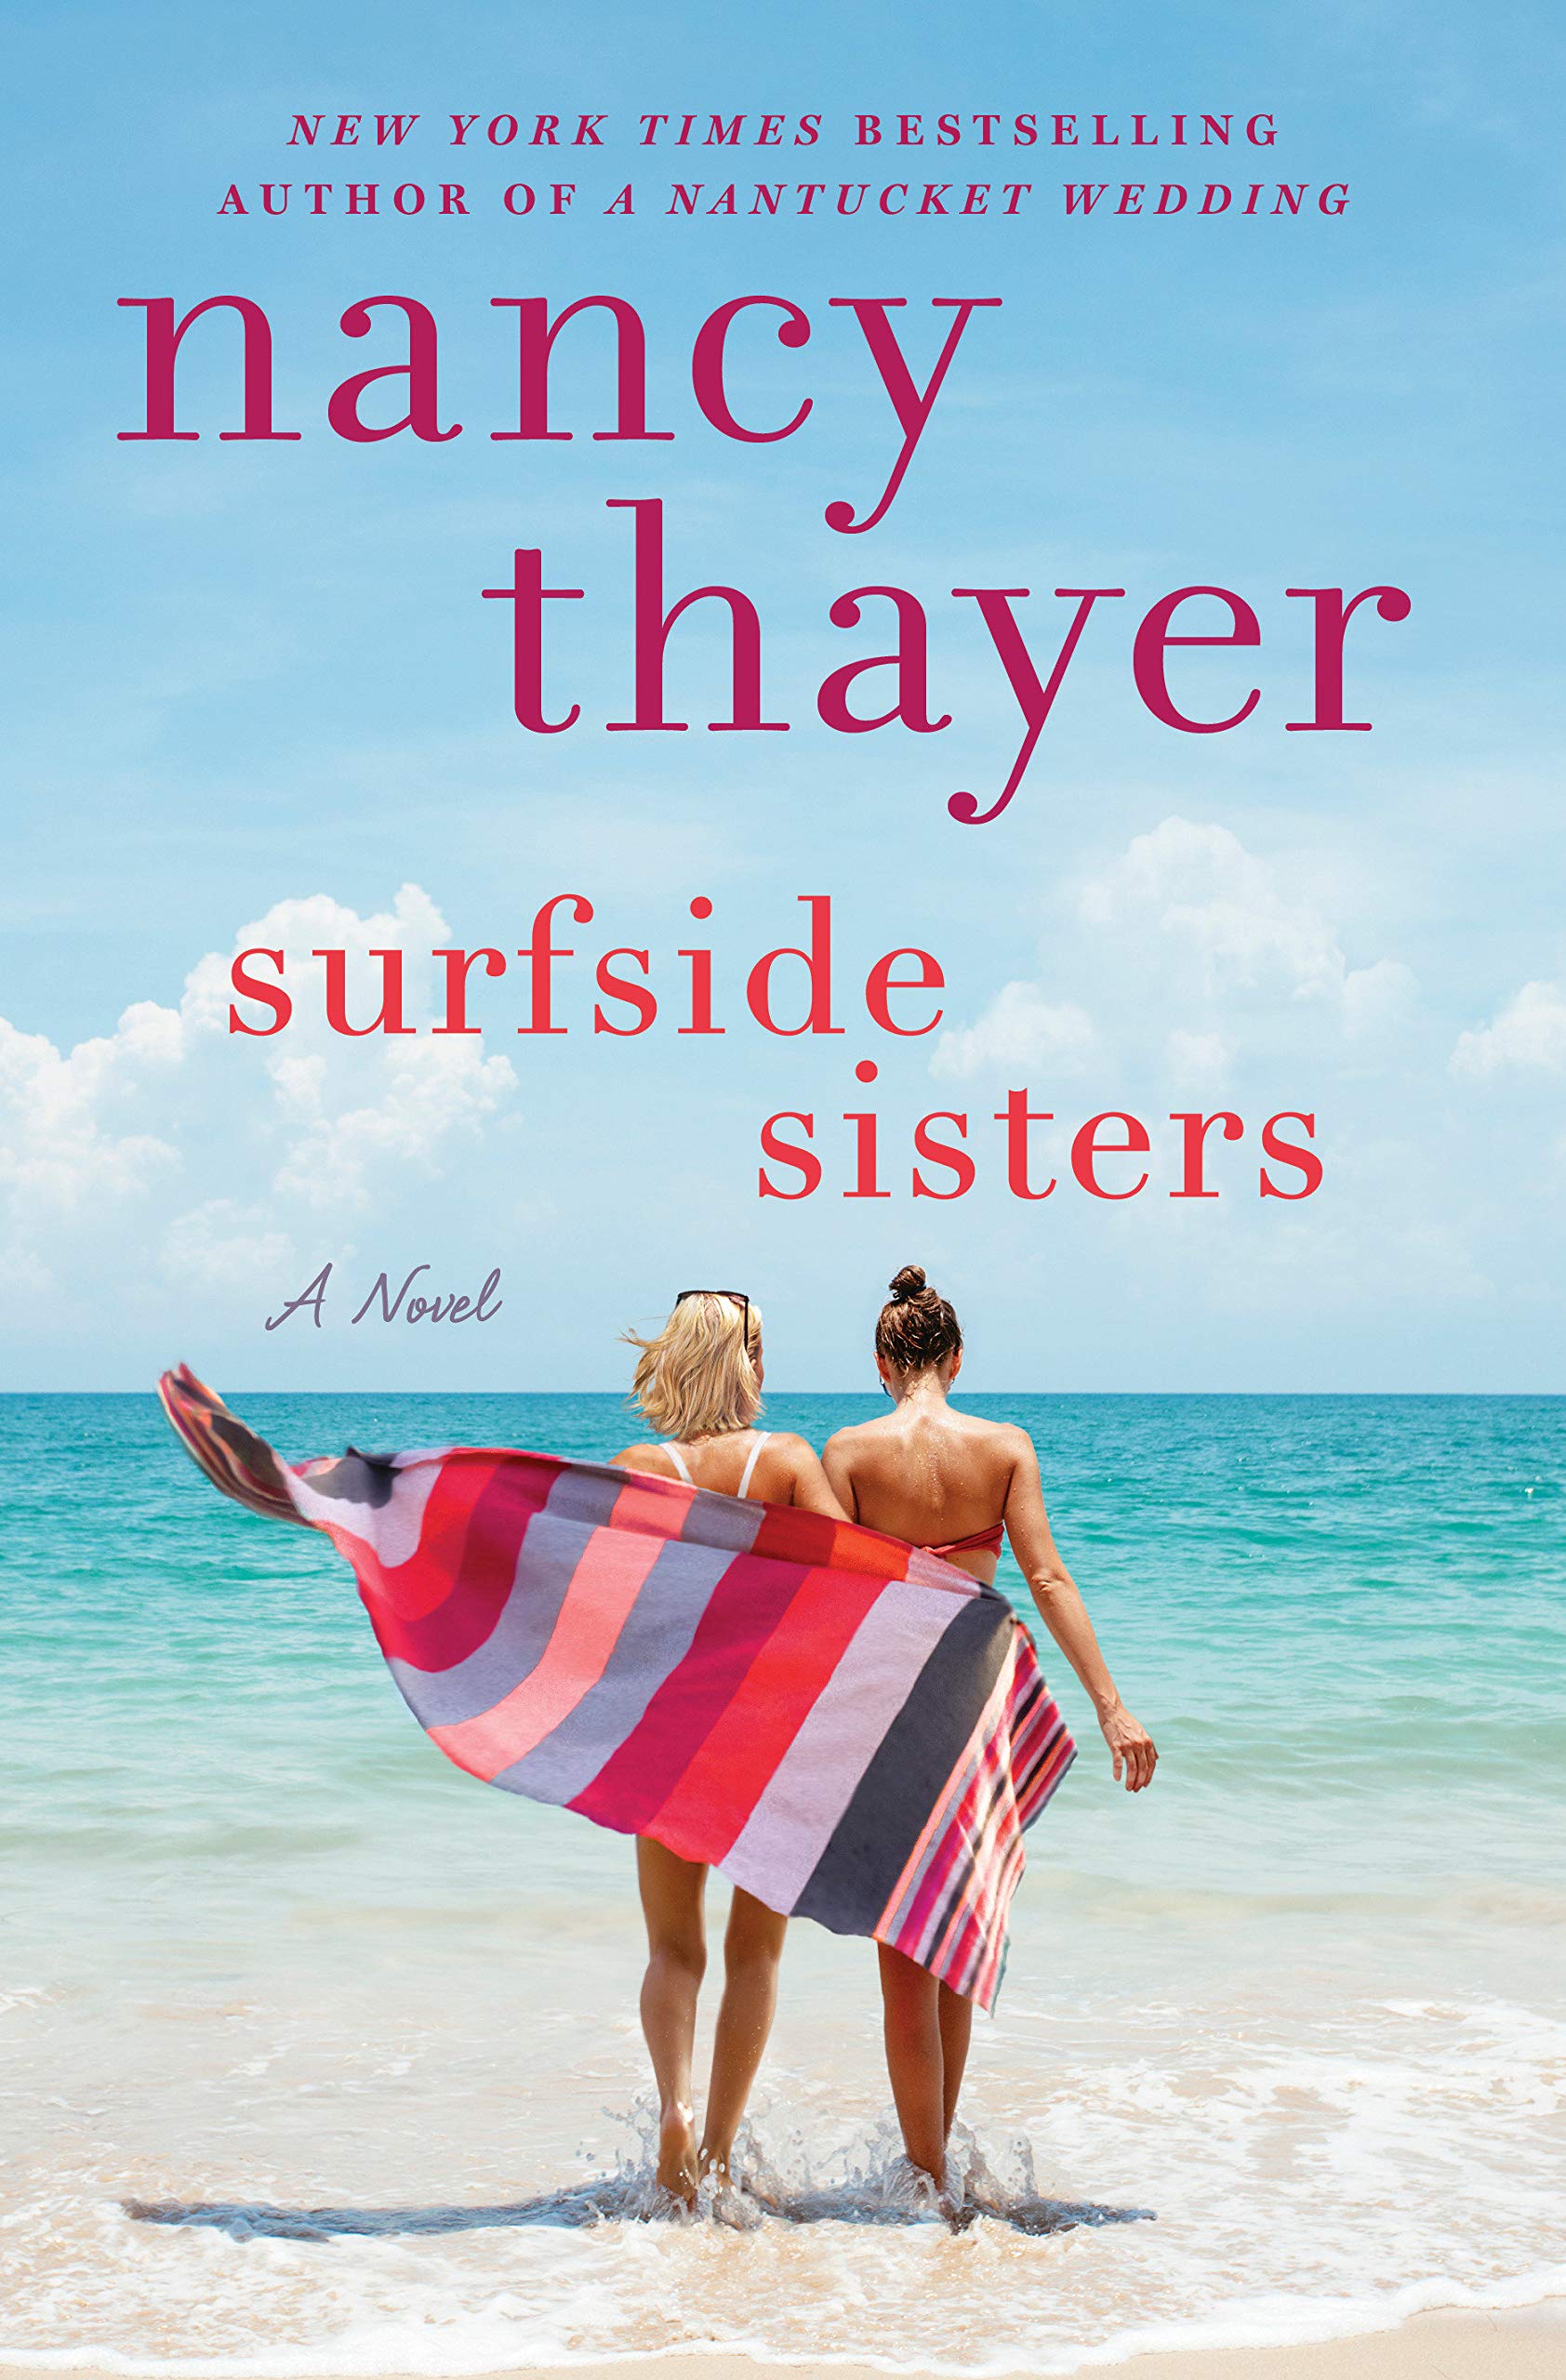 Surfside Sisters: A Novel